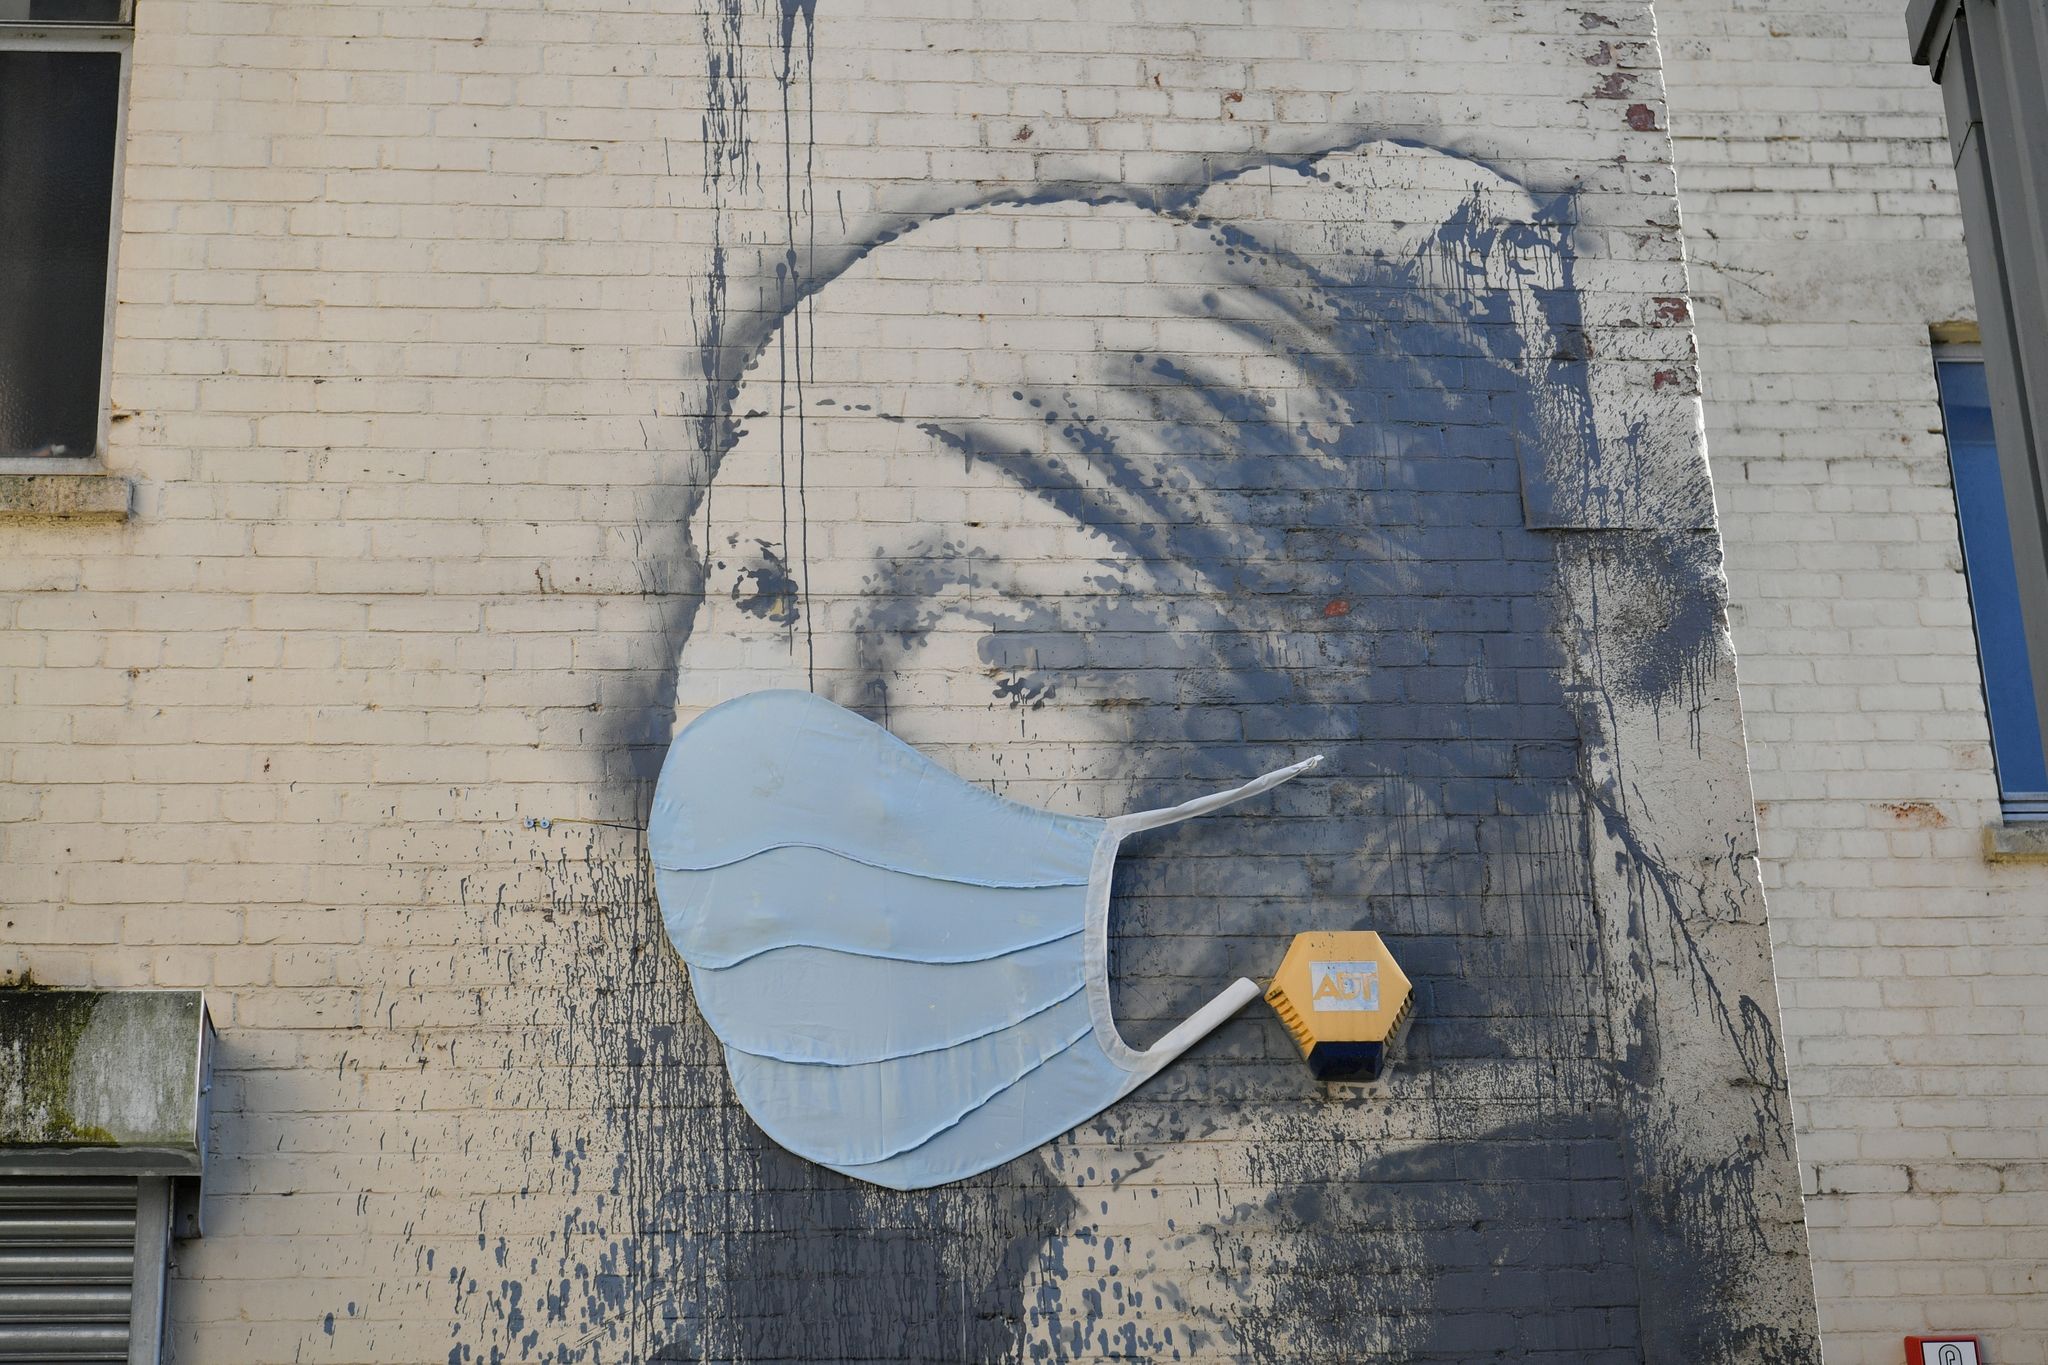 Das Wandgemälde "Das Mädchen mit dem Perlenohrring" in Bristol, das von Banksy stammen soll, hatte als Reaktion auf die Coronavirus-Pandemie erst vor Kurzem eine Gesichtsmaske bekommen. Foto: dpa/Ben Birchall/PA Wire